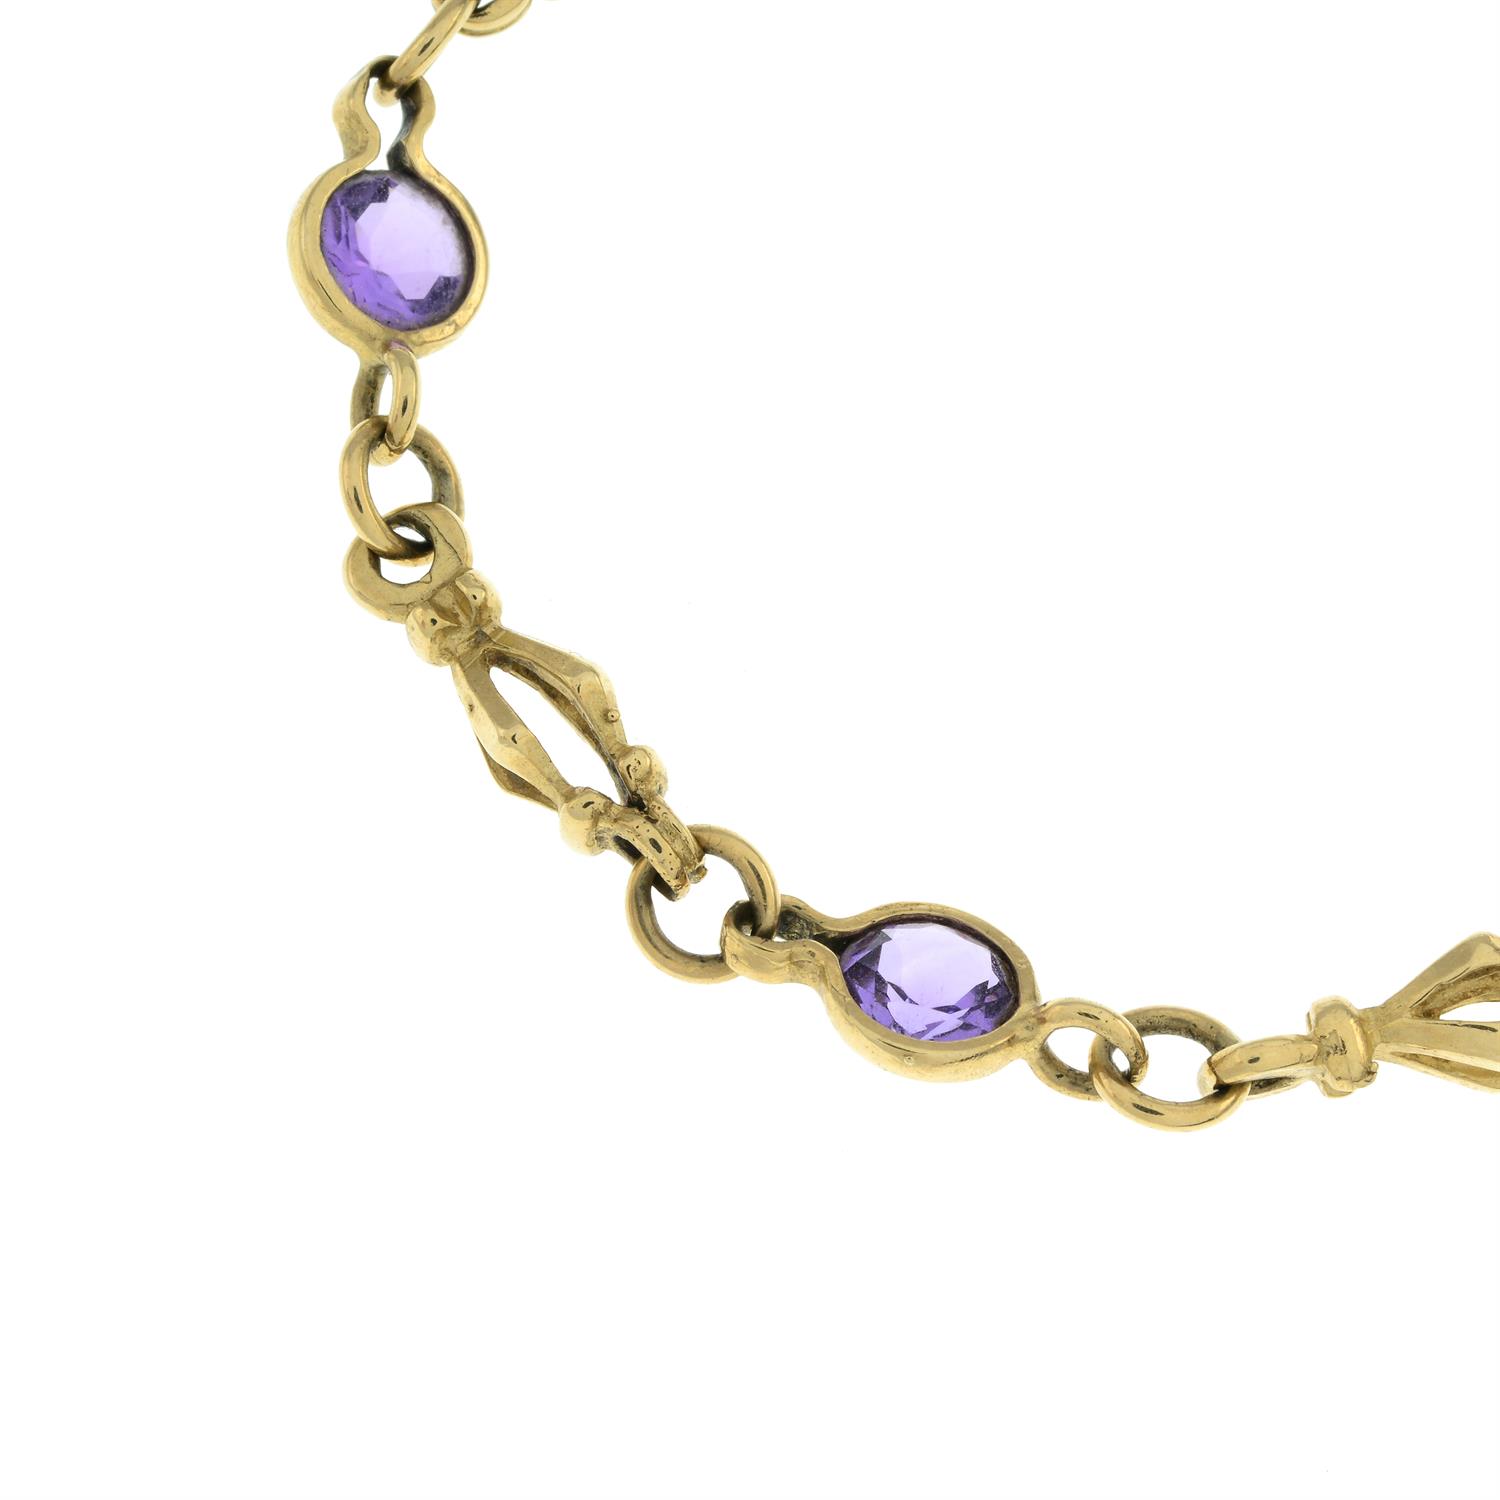 9ct gold amethyst bracelet - Image 2 of 2